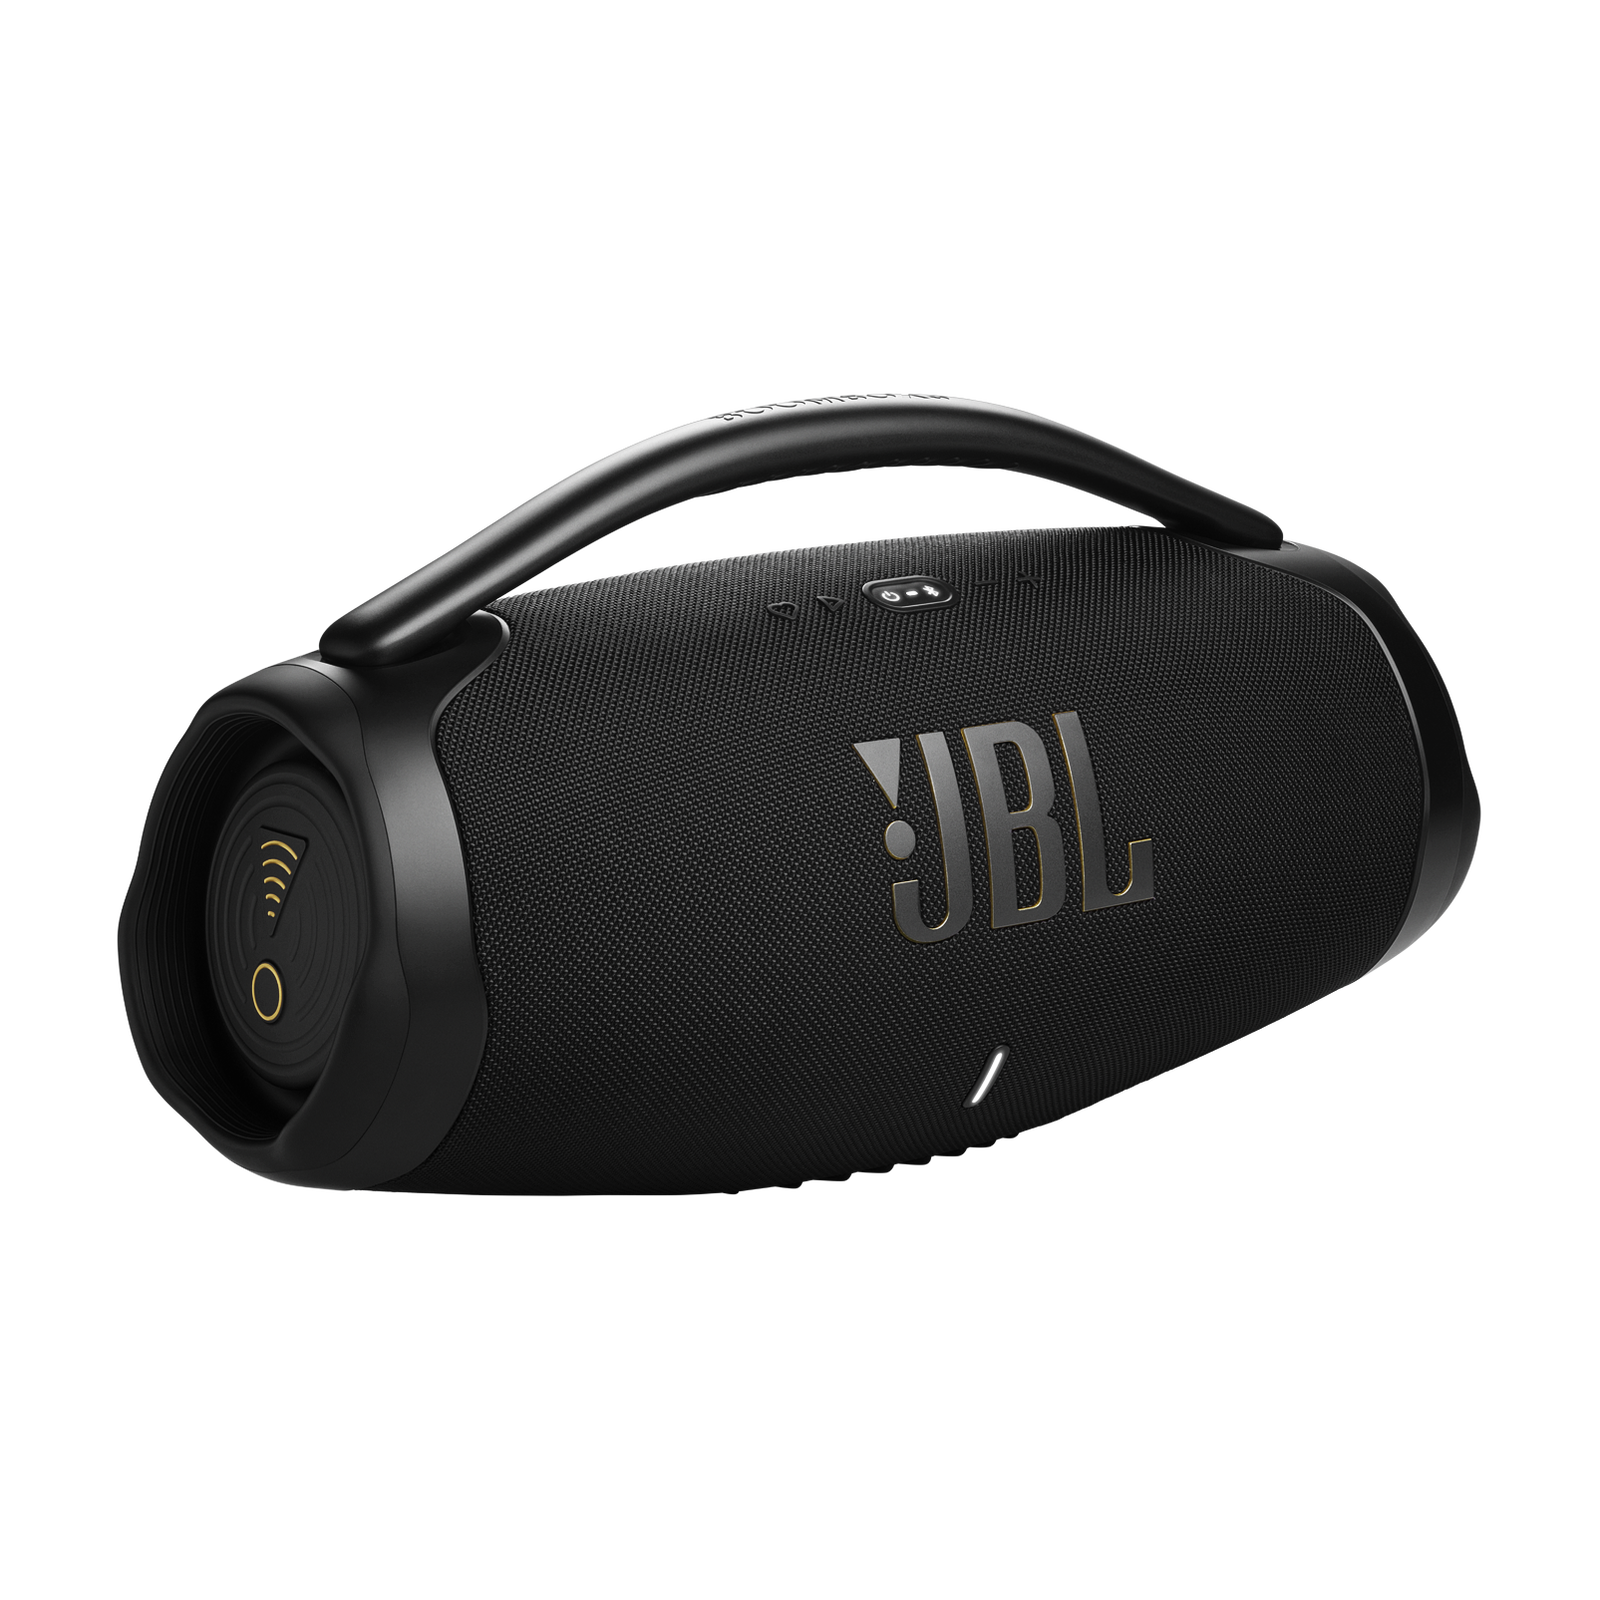 JBL Boombox 3 Wi-Fi Black Wifi Speaker